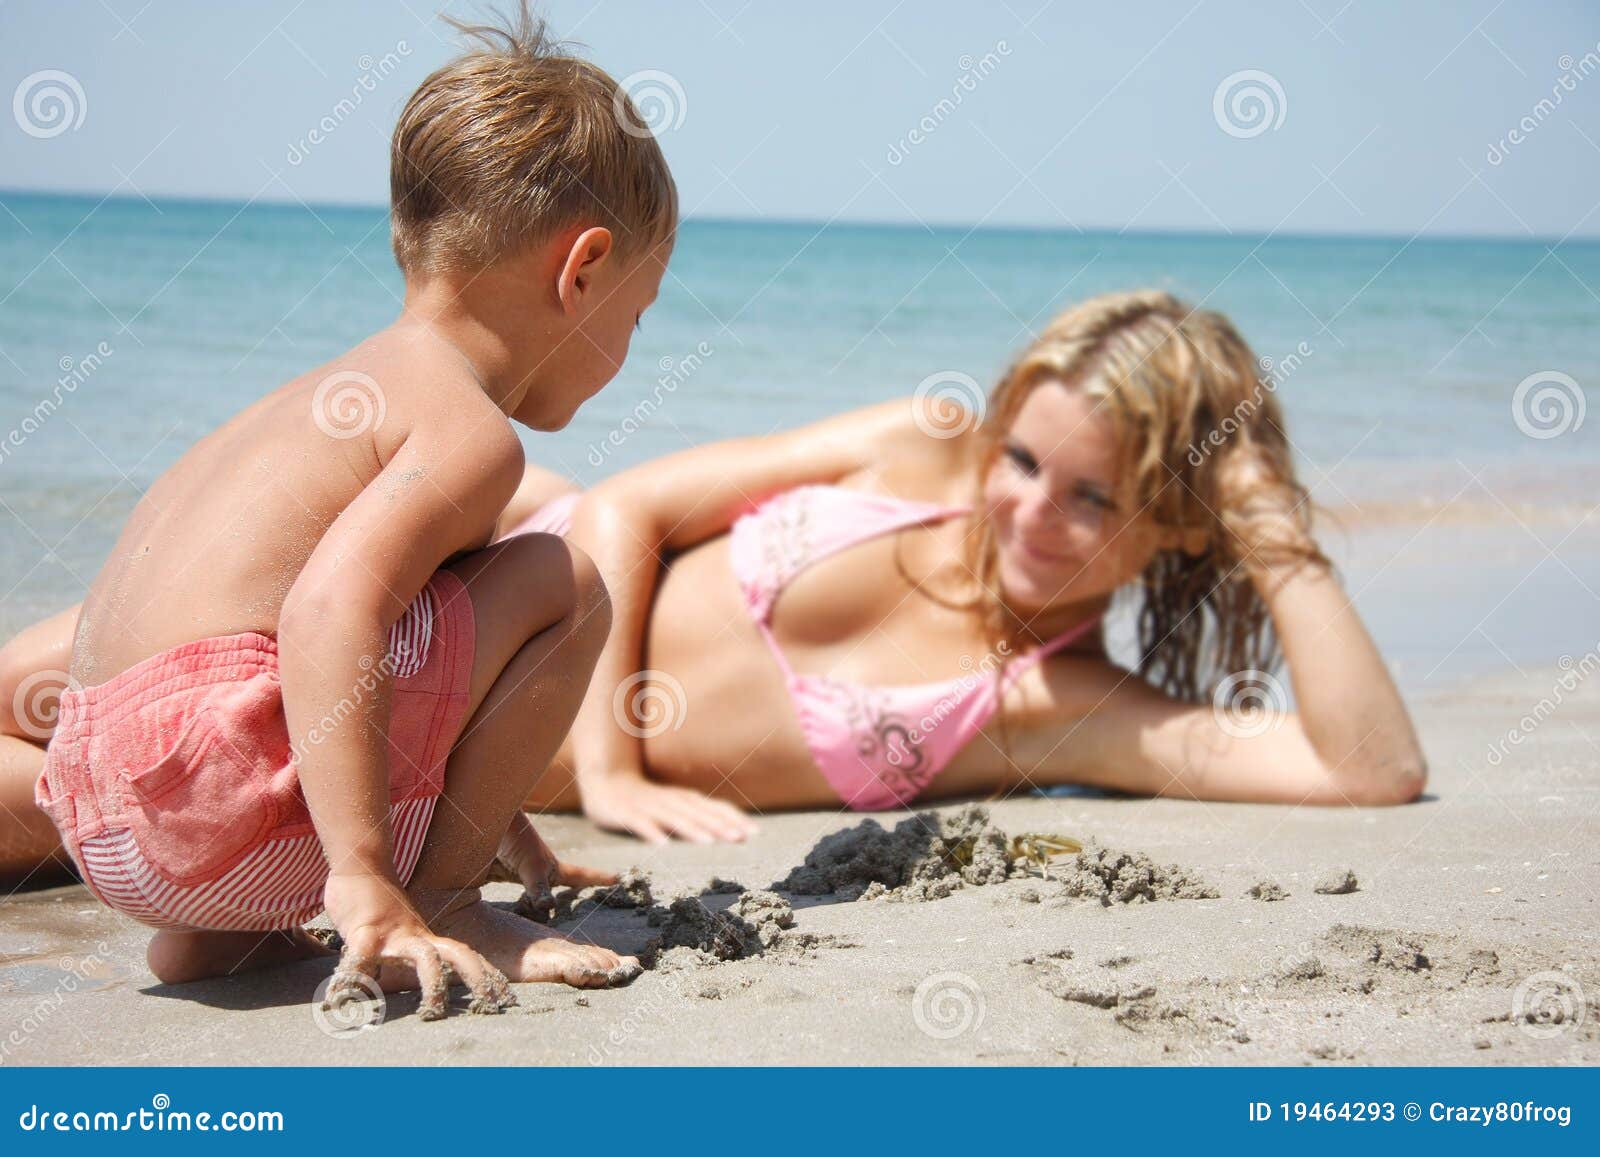 Мамы на нудиском пляже. Мамы с сыновьями на нудистких пляжах. Дочка подросток на пляже. Маленькие нудисточки с родителями. Мальчик с мамашей на пляже.